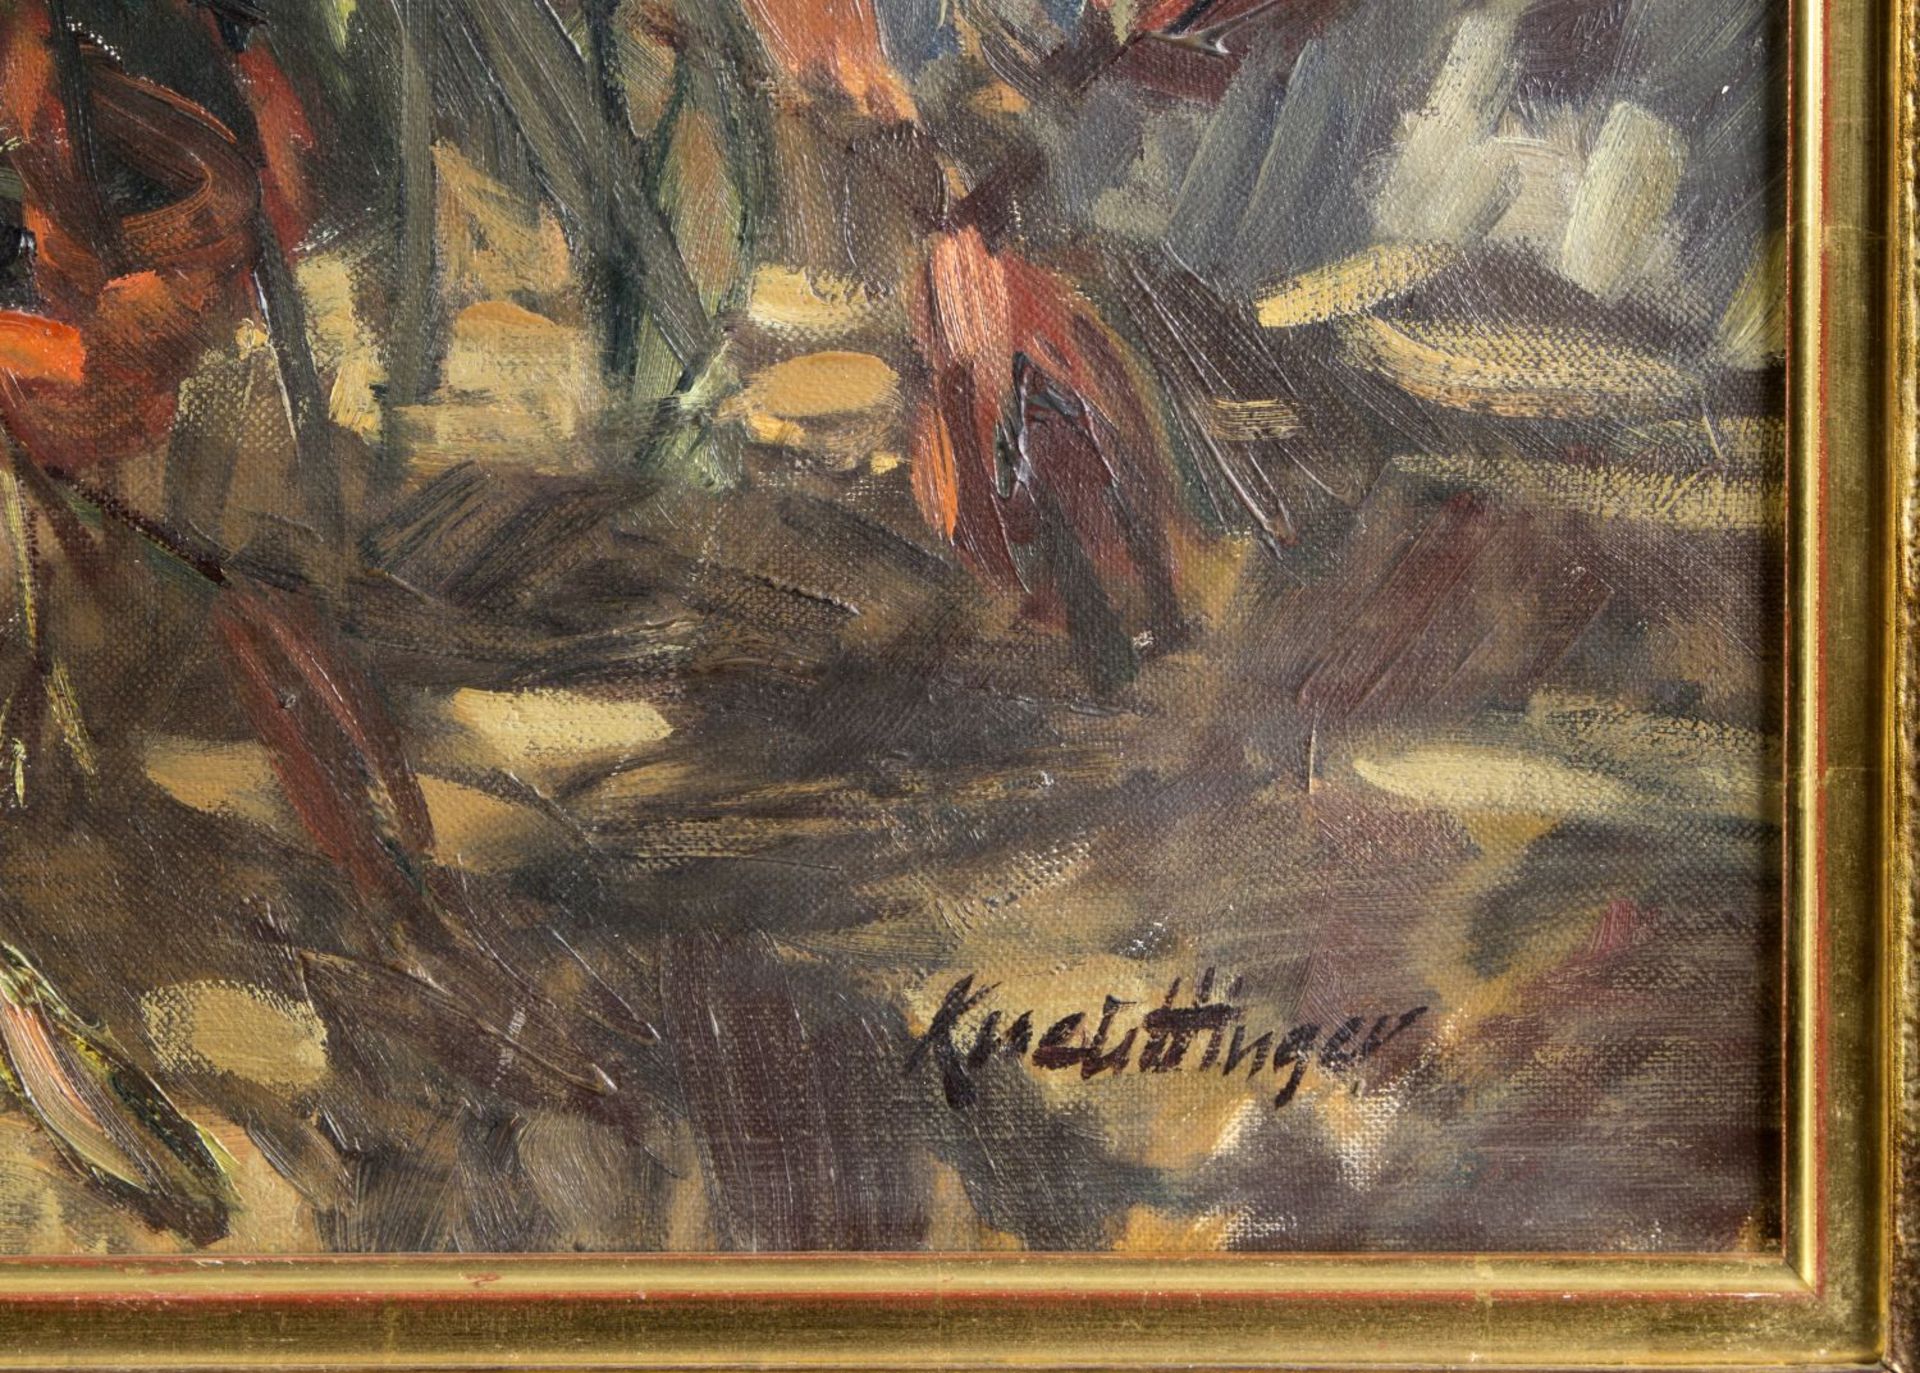 Kneuttinger, Josef. 1927 - München - 2015 Blumenstillleben. Öl/Lwd. Sign. 70,5 x 80 cm. Gerahmt. - Image 2 of 3